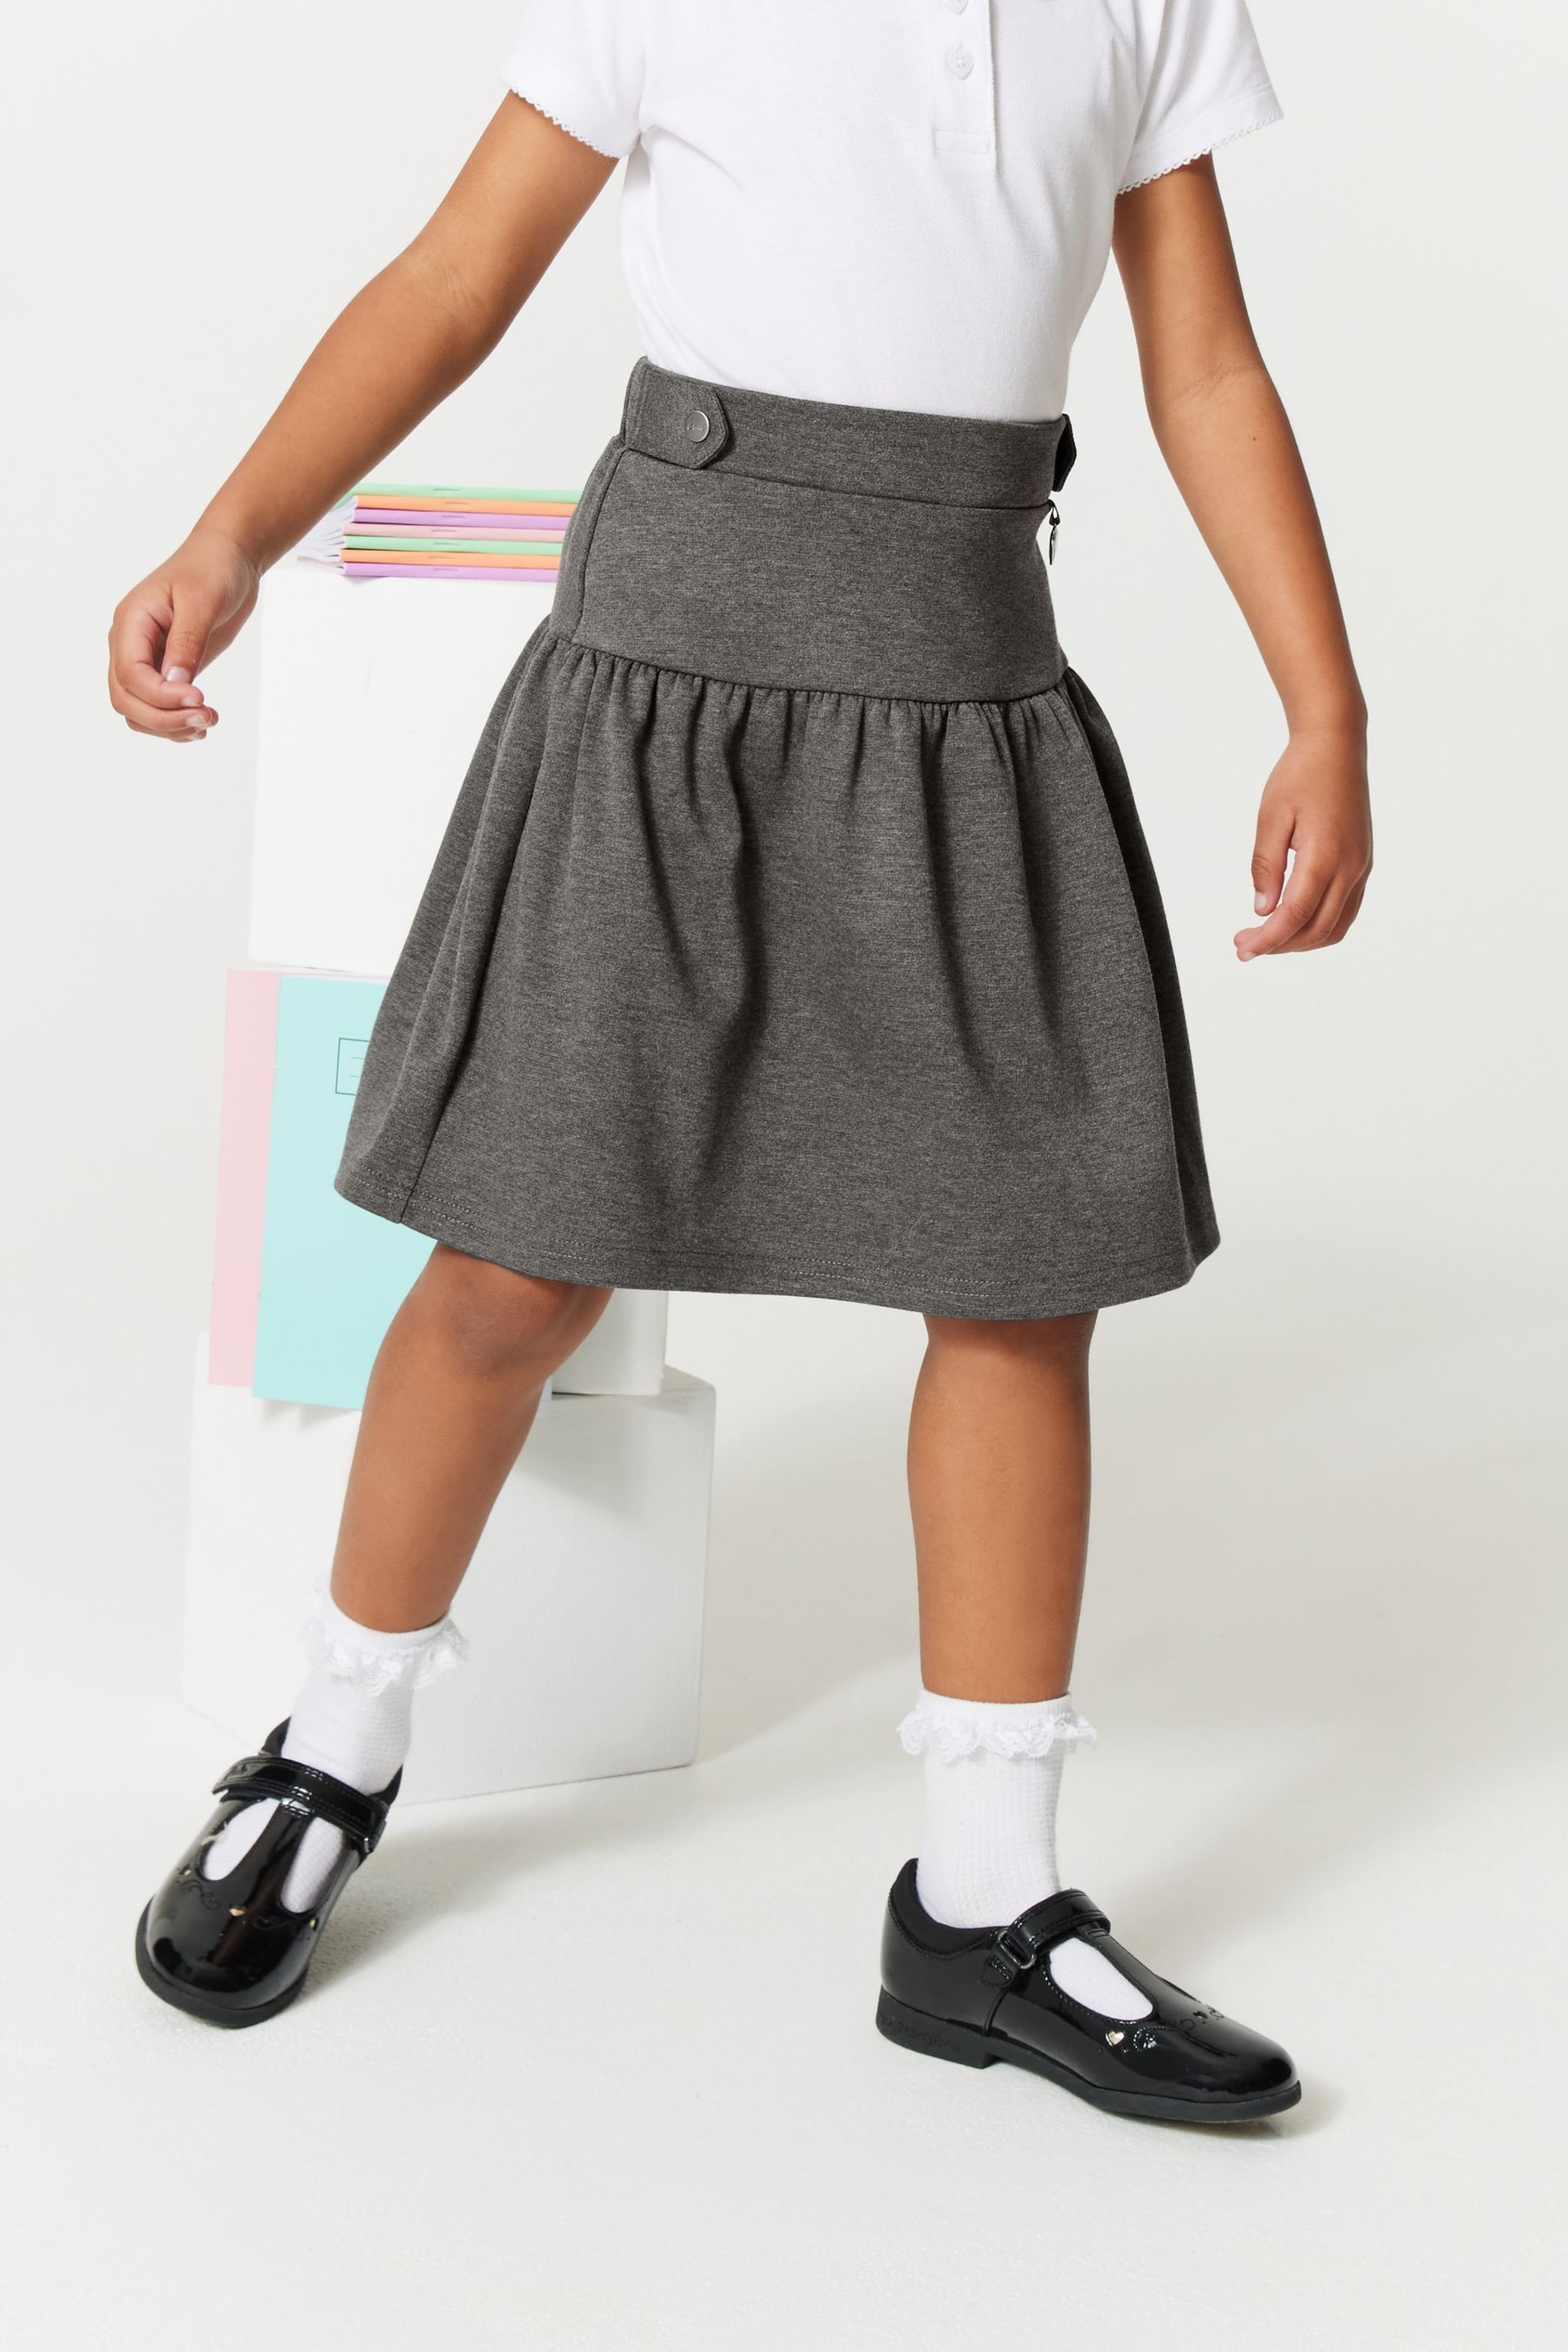 Clarks Grey School Skater Skirt - Image 2 of 8